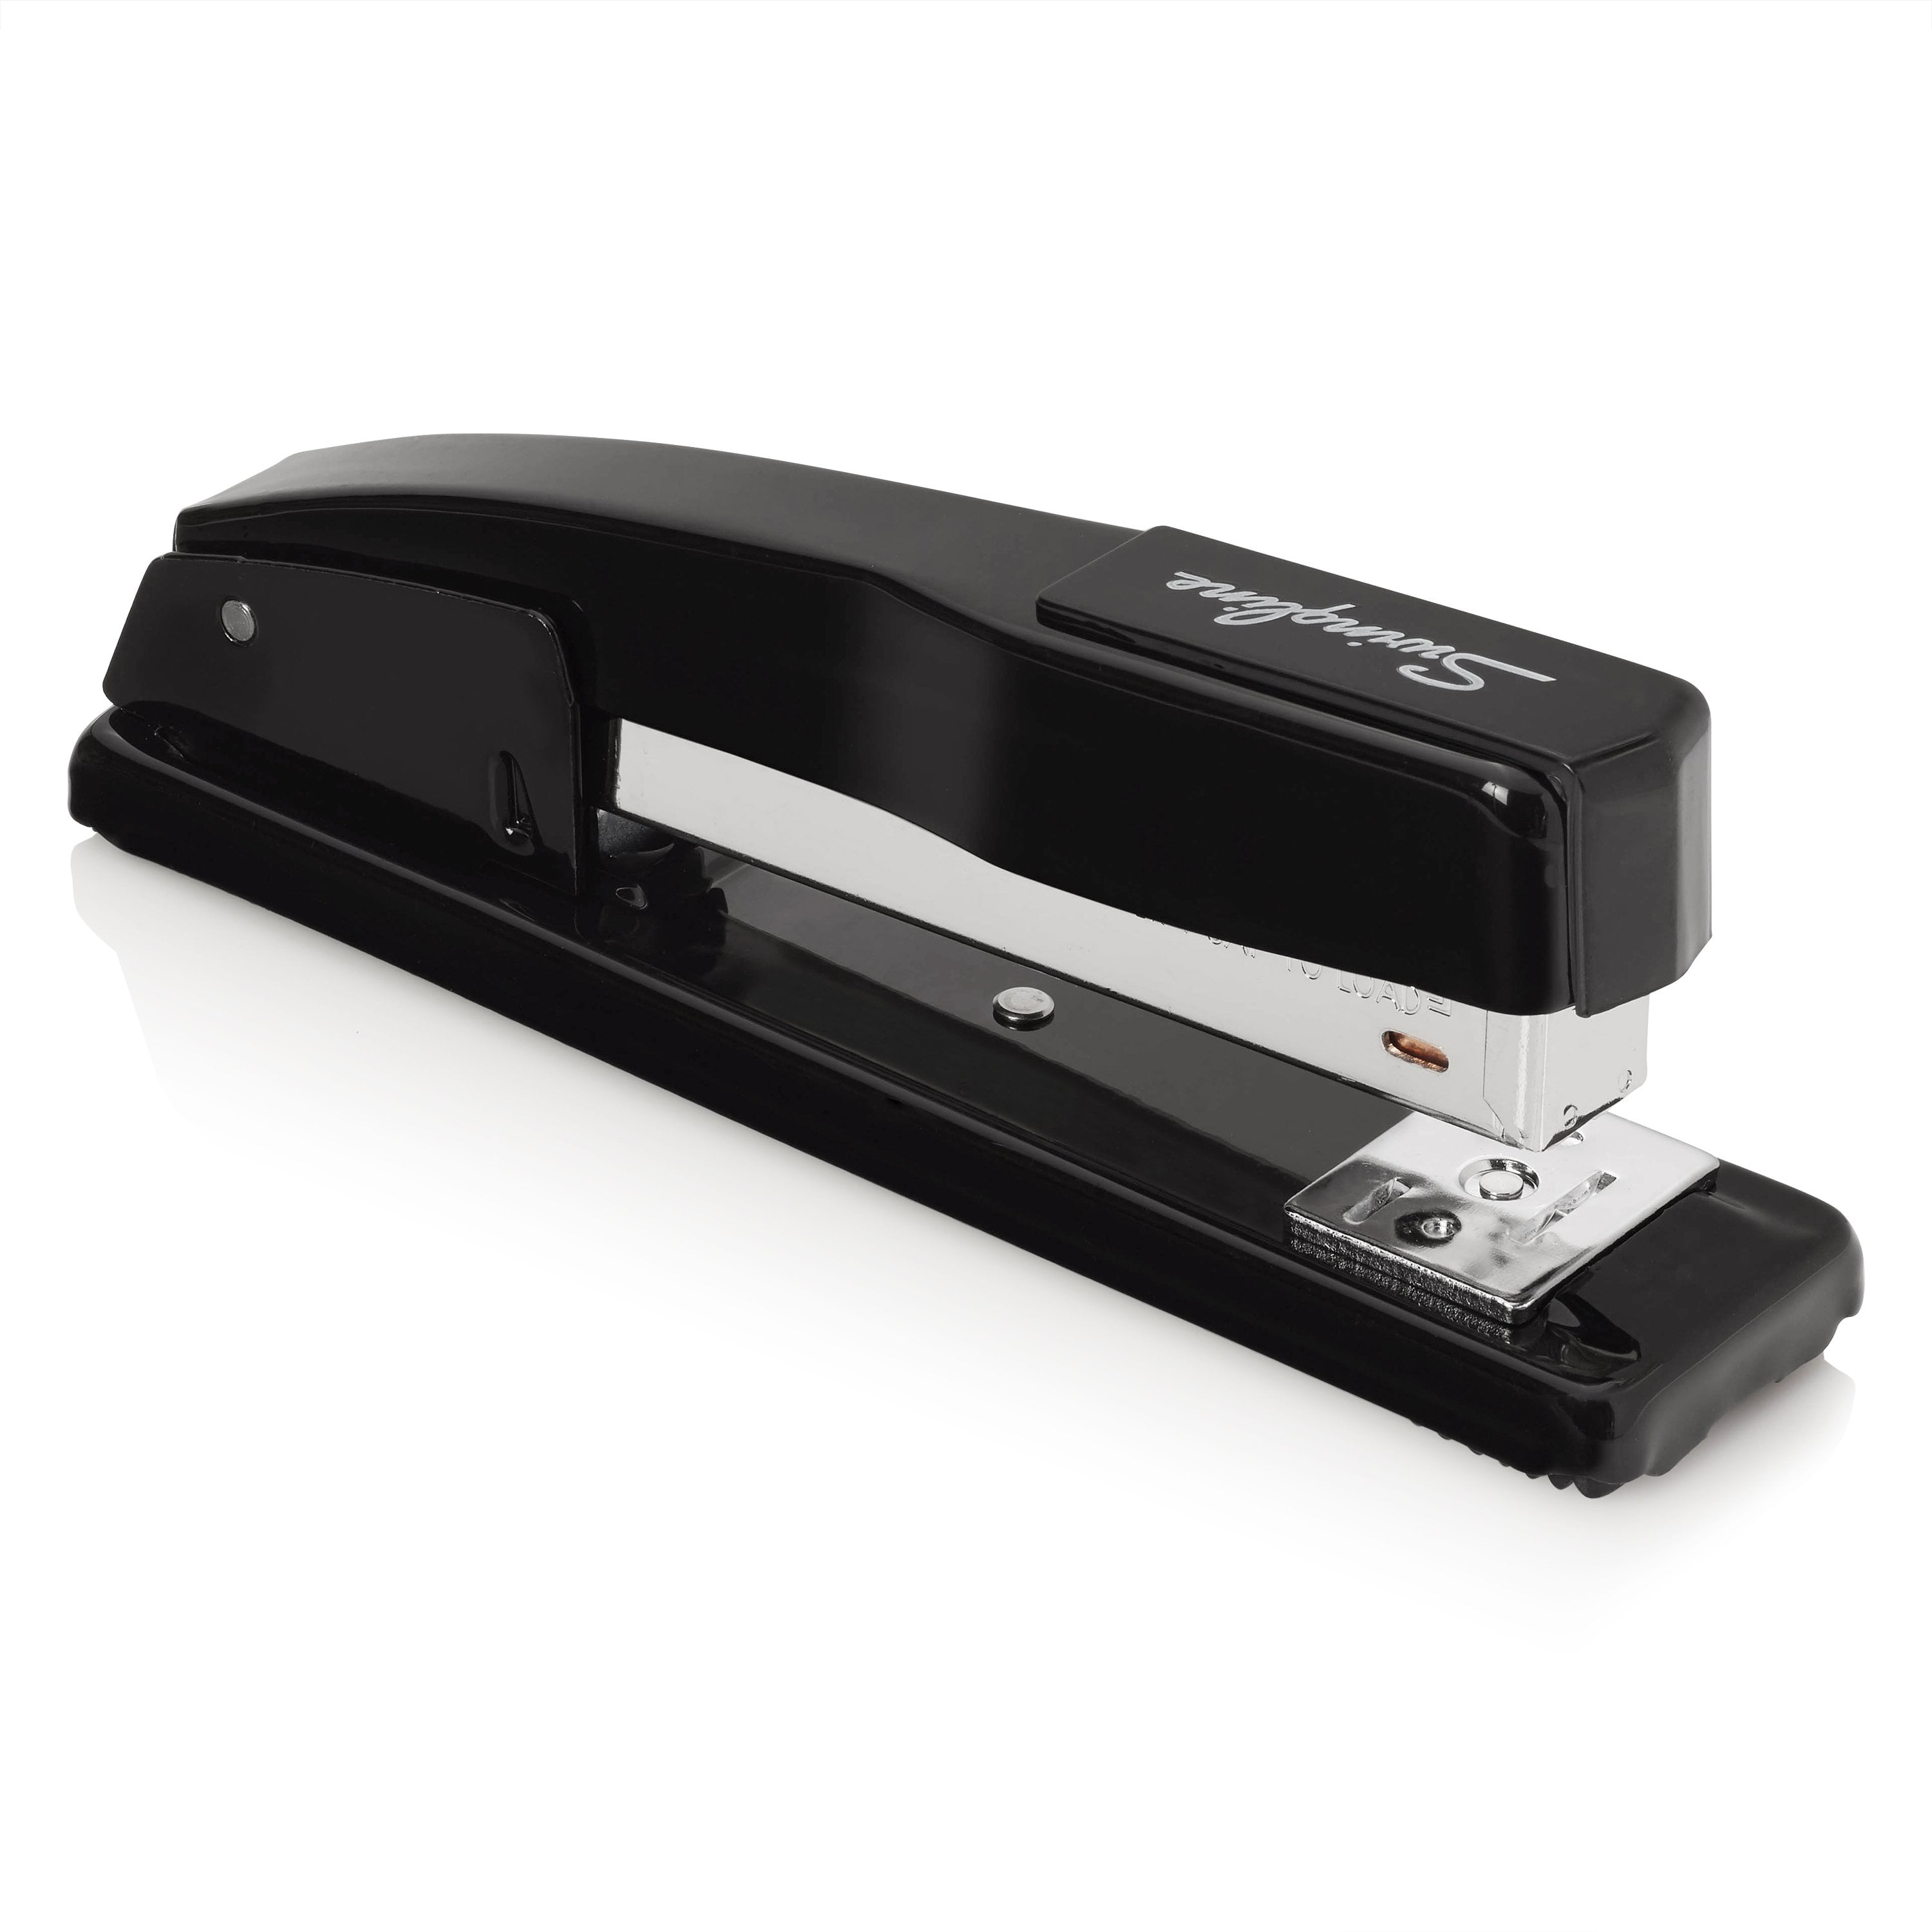 Swingline Commercial Desk Stapler, 20-Sheet Capacity, Black (S7044401)